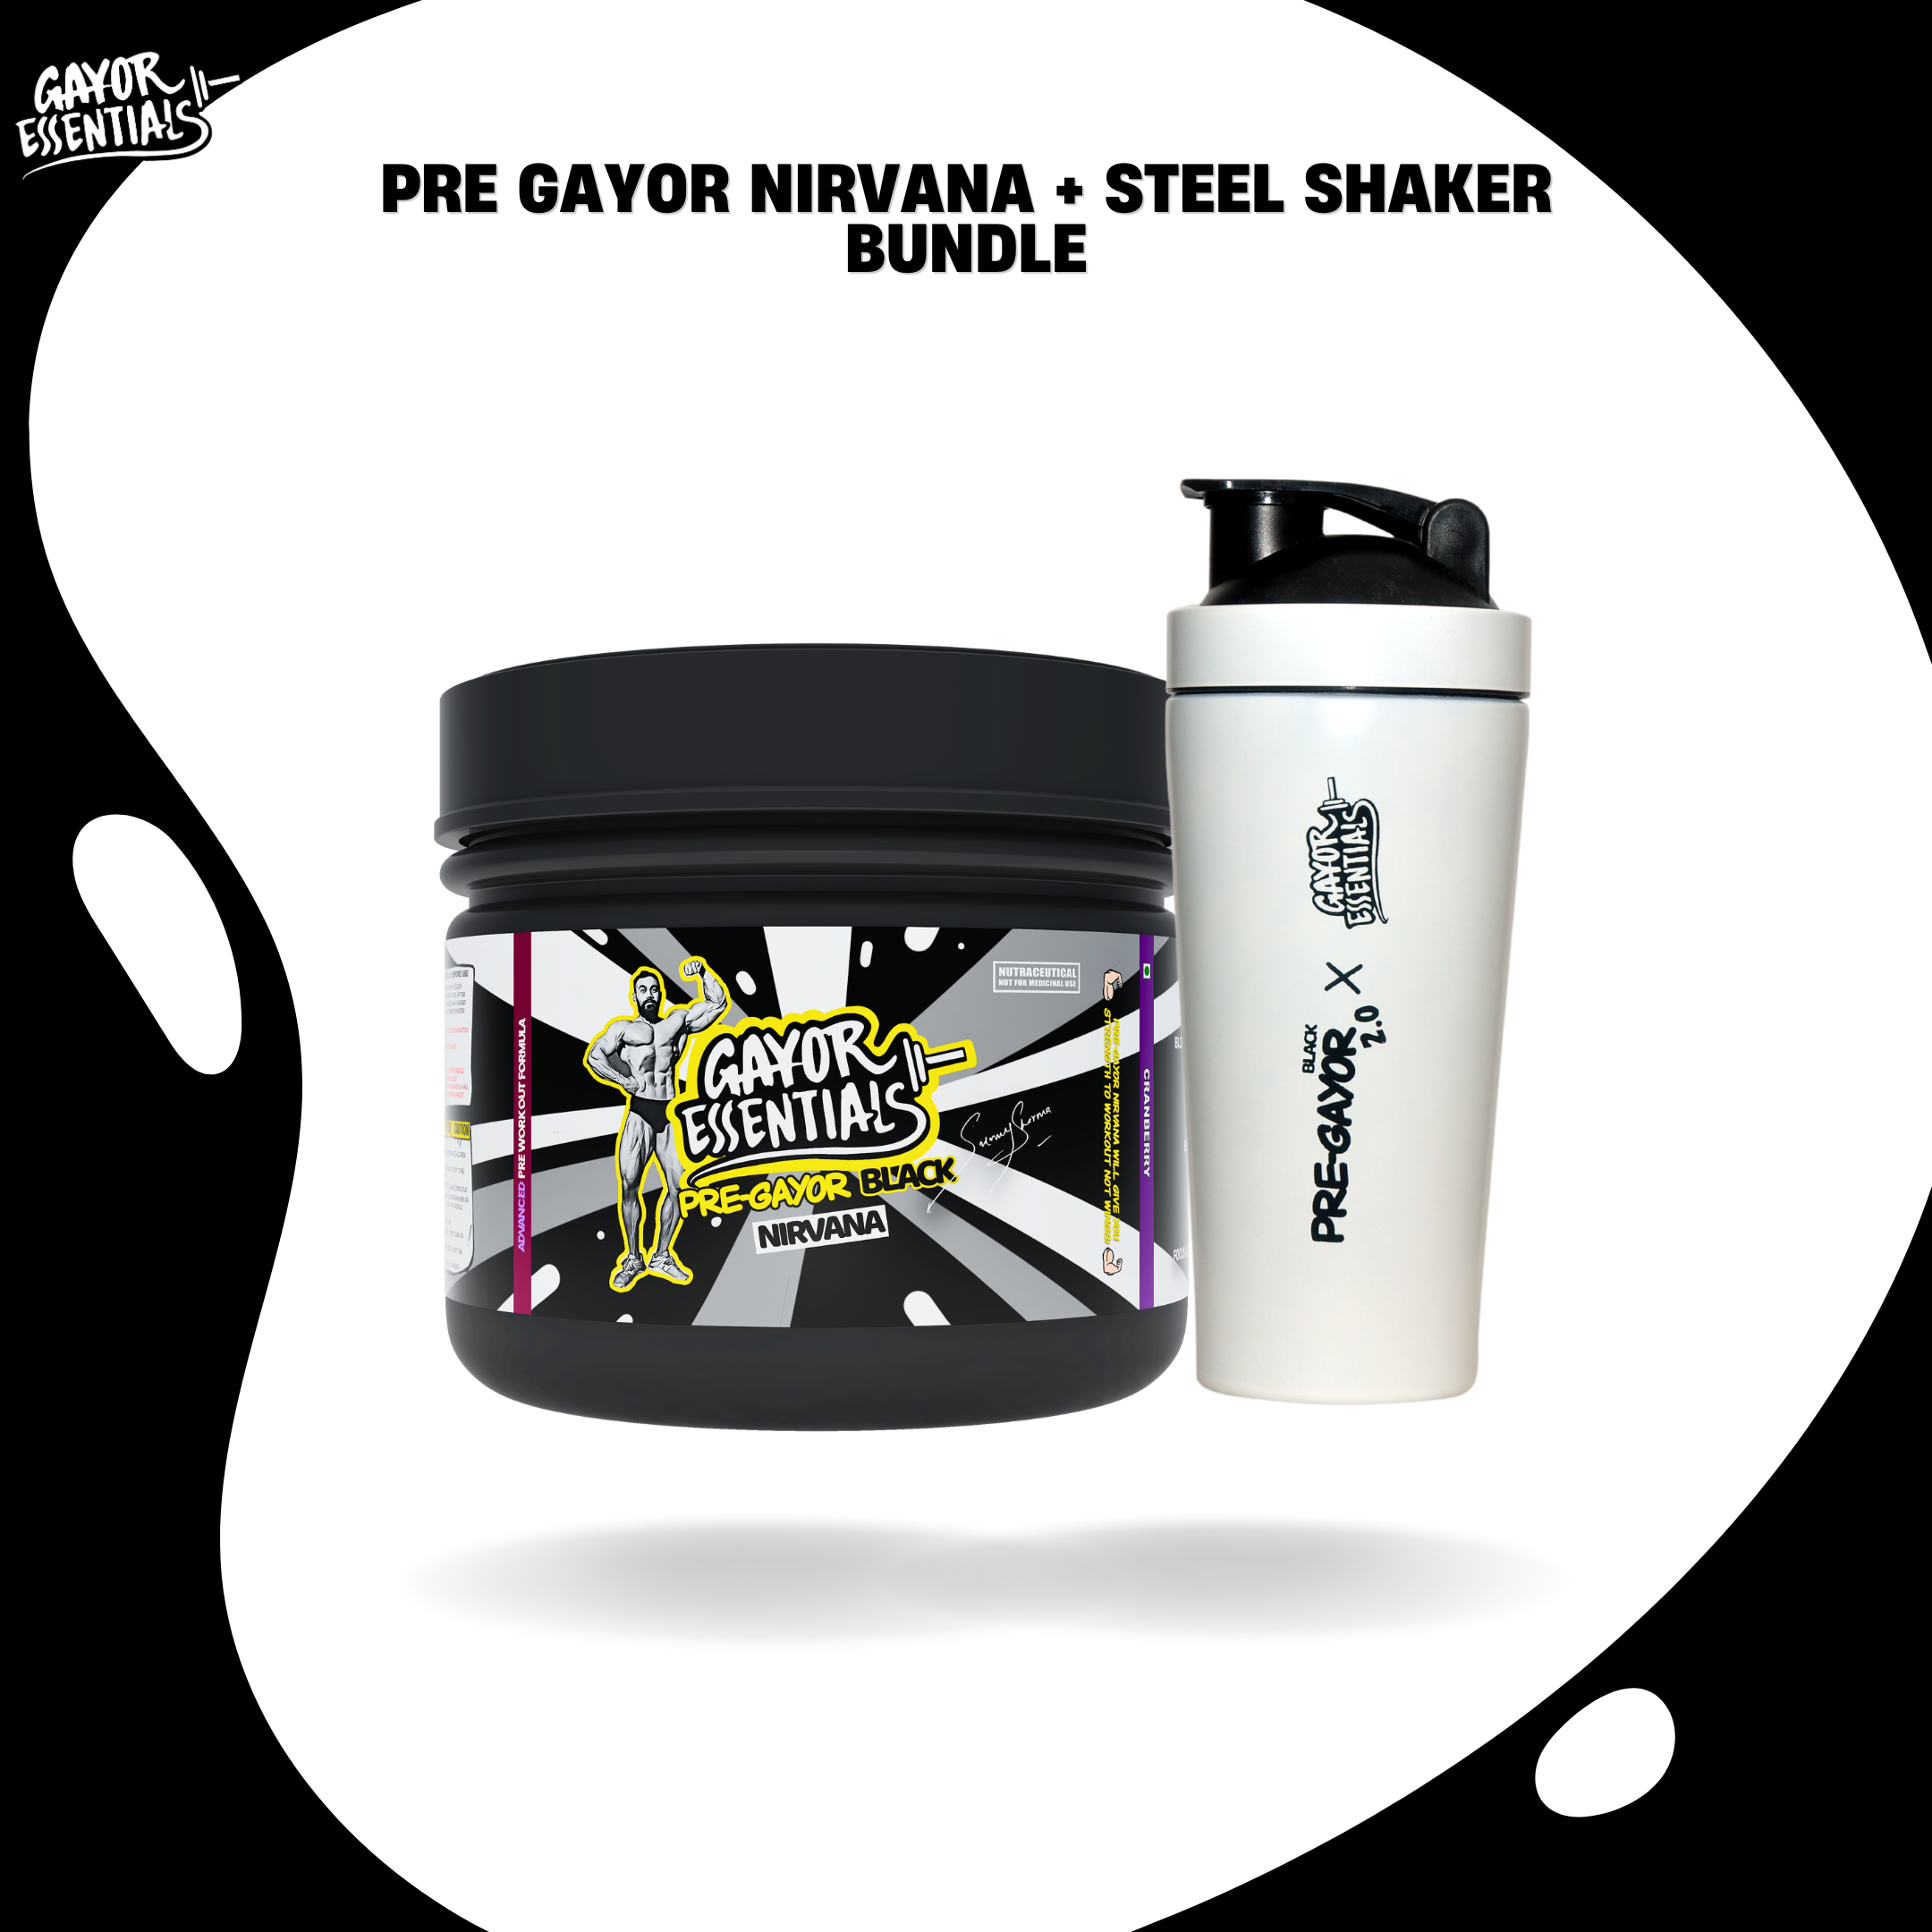 Pre Gayor Nirvana + Steel Shaker Bundle